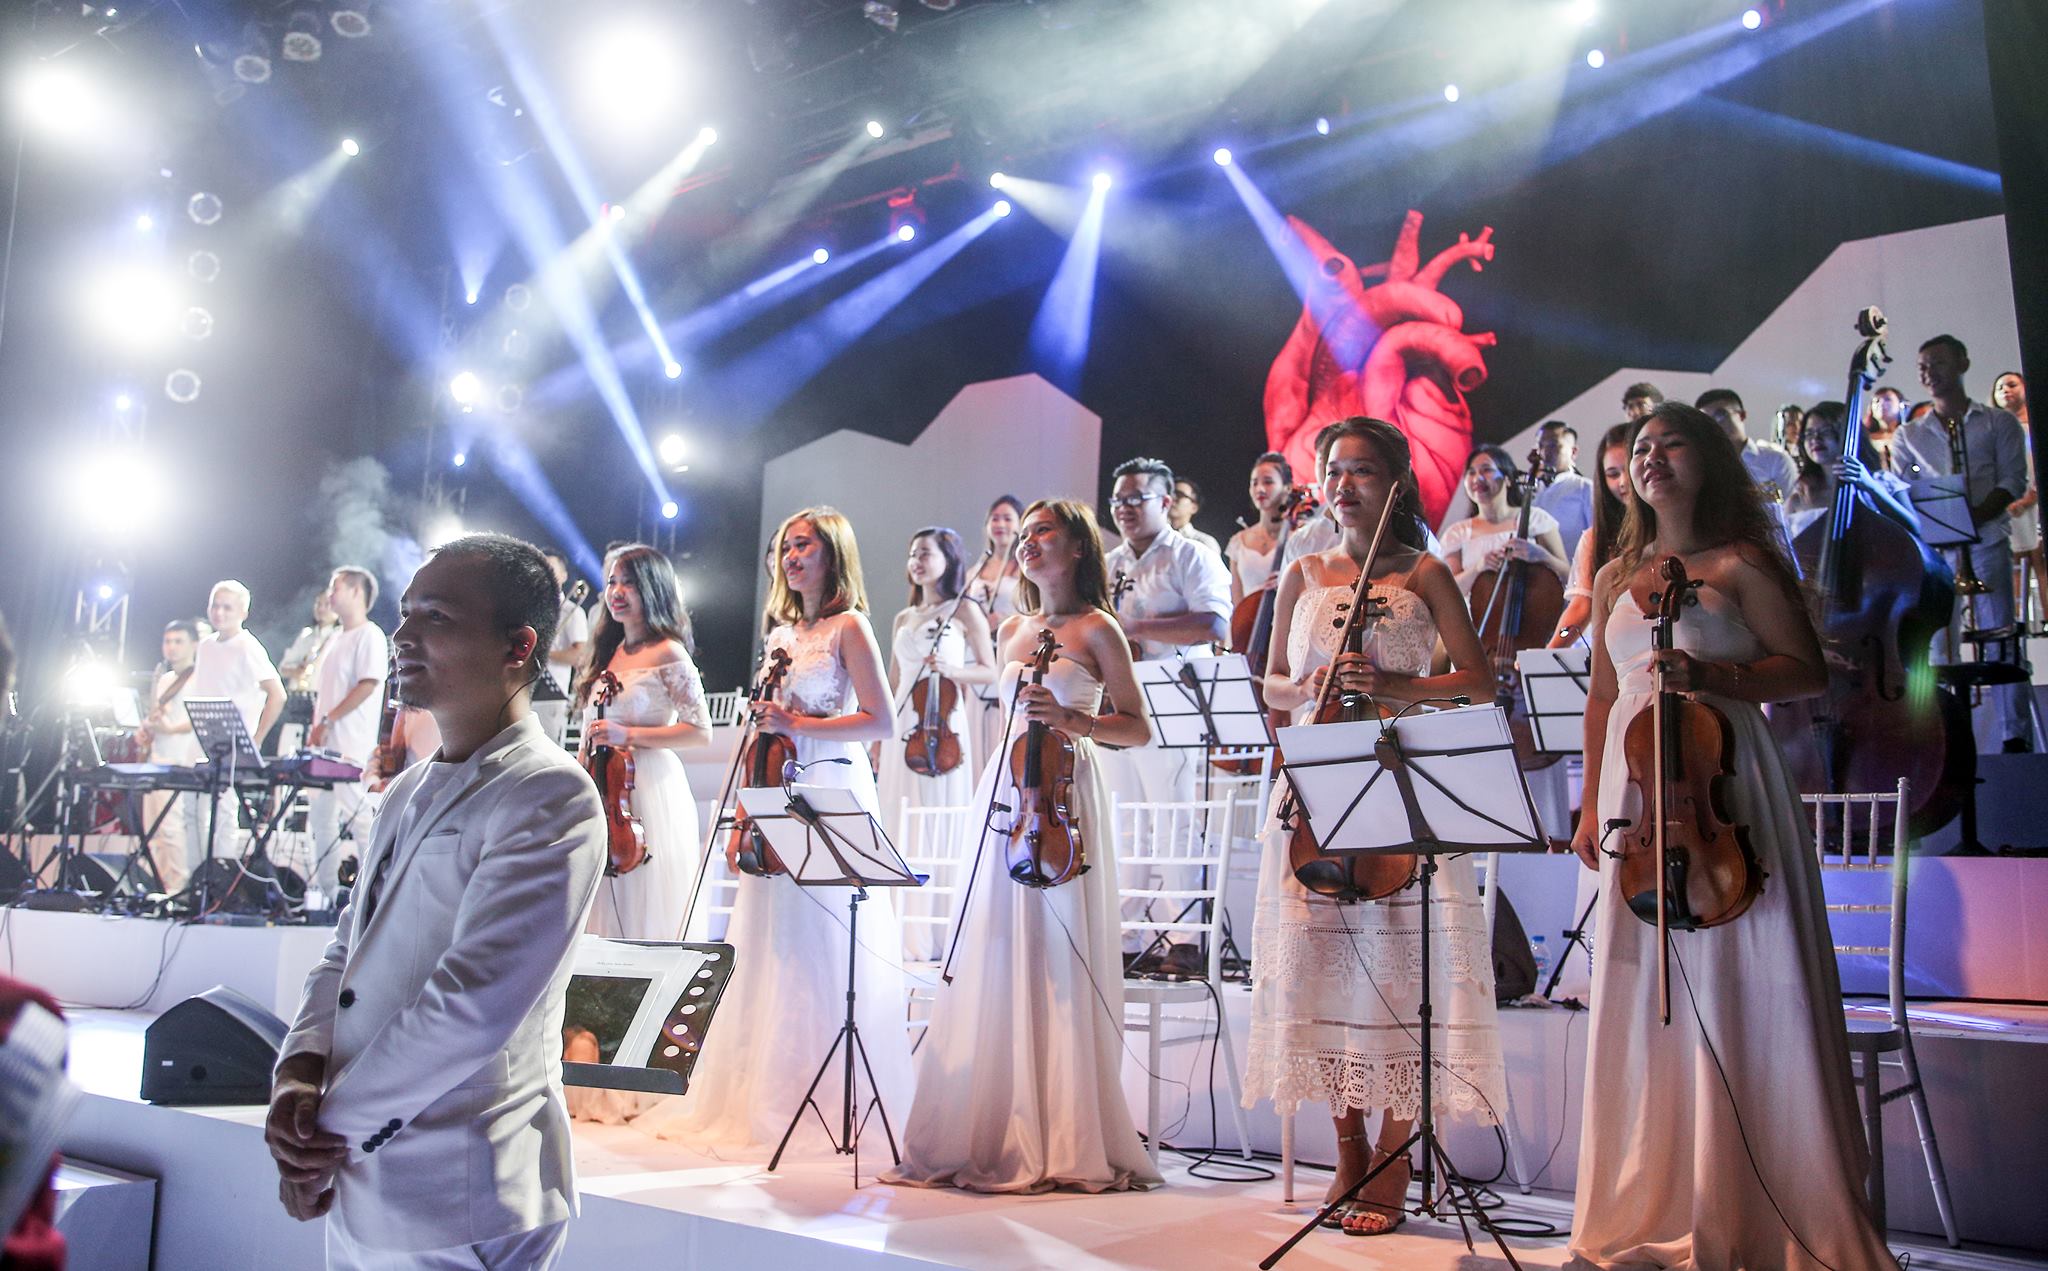 Dàn nhạc giao hưởng triệu view khẳng định đẳng cấp với concert cùng diva Hàn Quốc Sohyang - Ảnh 8.